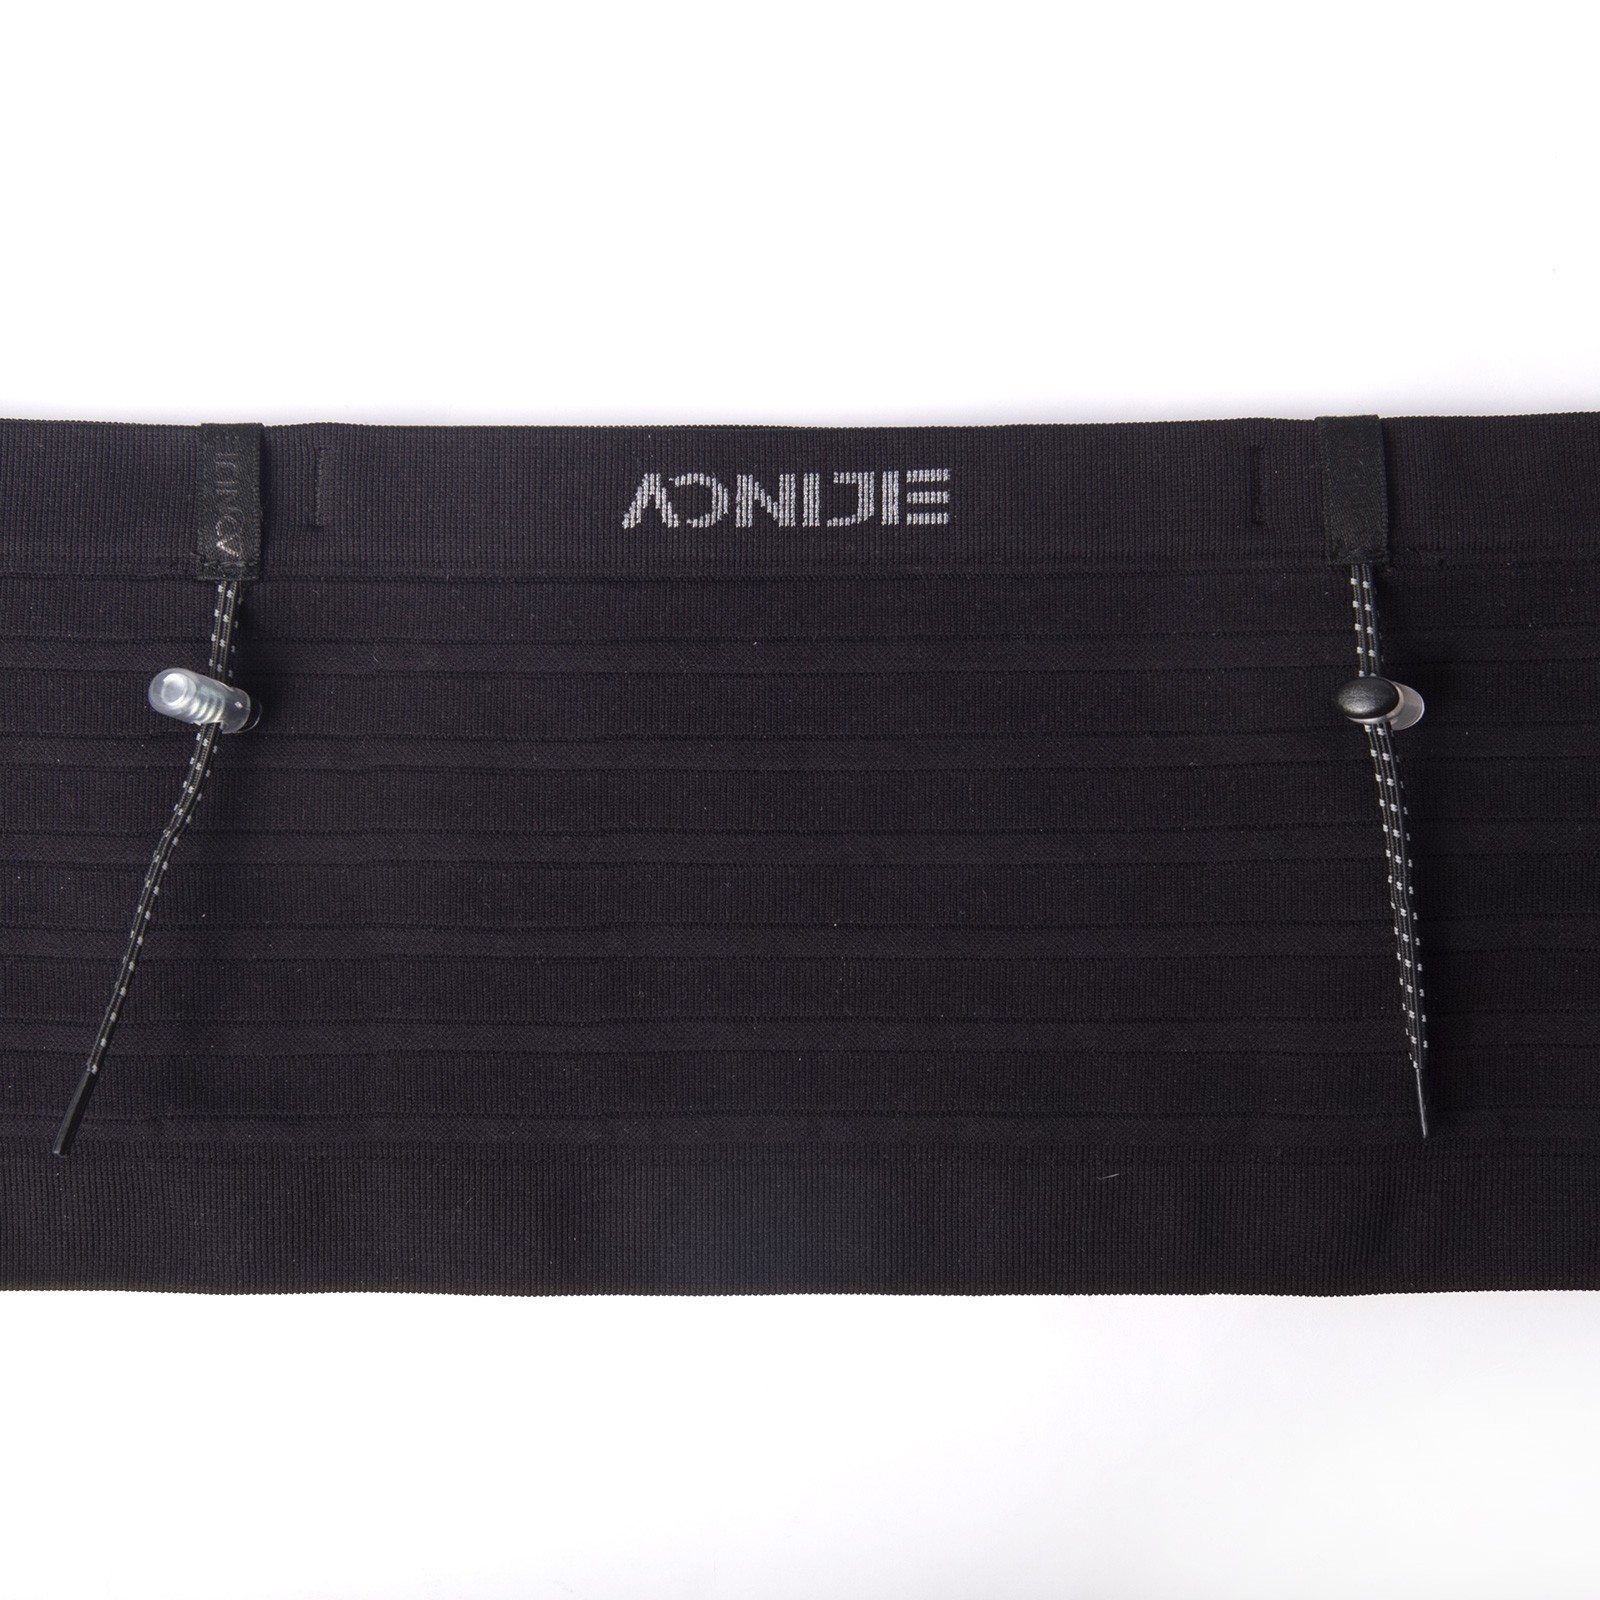 Aonijie w8116 cintura deportiva cinturón de carrera todoterreno negro Fanny Pack soporte de teléfono móvil neutro al aire libre ultraligero personalizado cintura